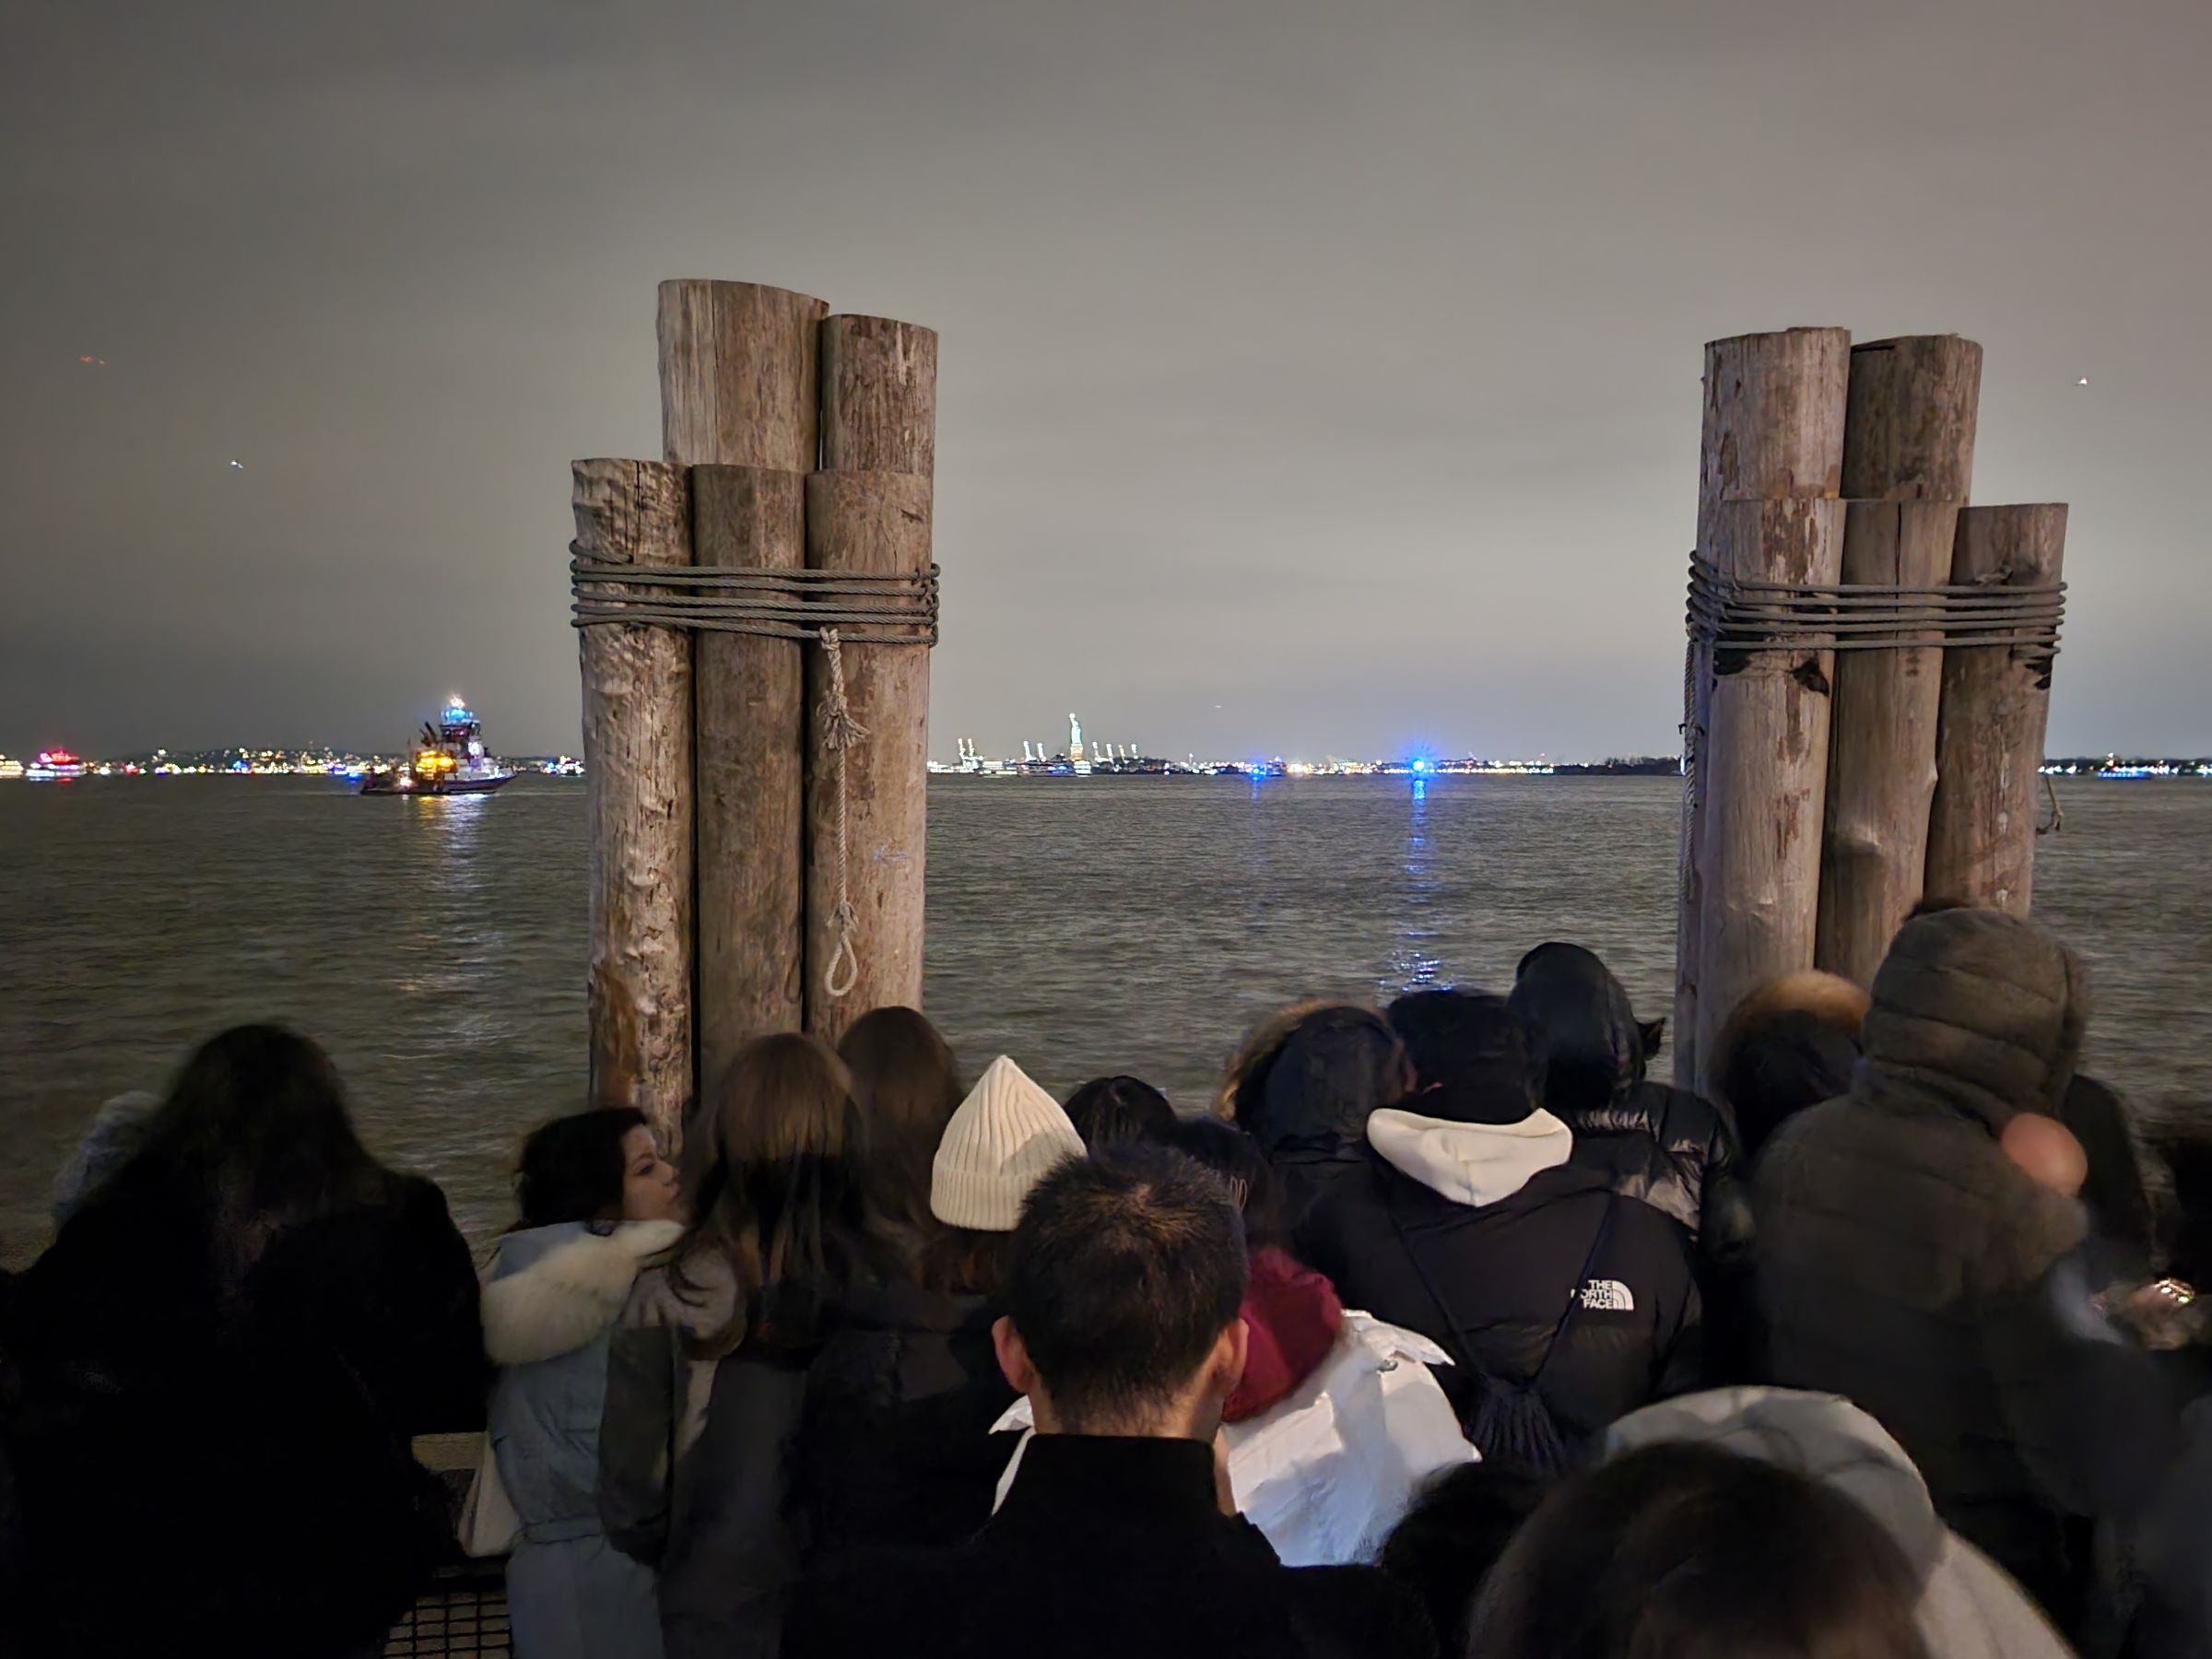 맨하탄 남쪽의 배터리파크(Battery Park)에서 뉴욕시의 2024년 새해맞이 자유의 여신상 불꽃놀이 구경